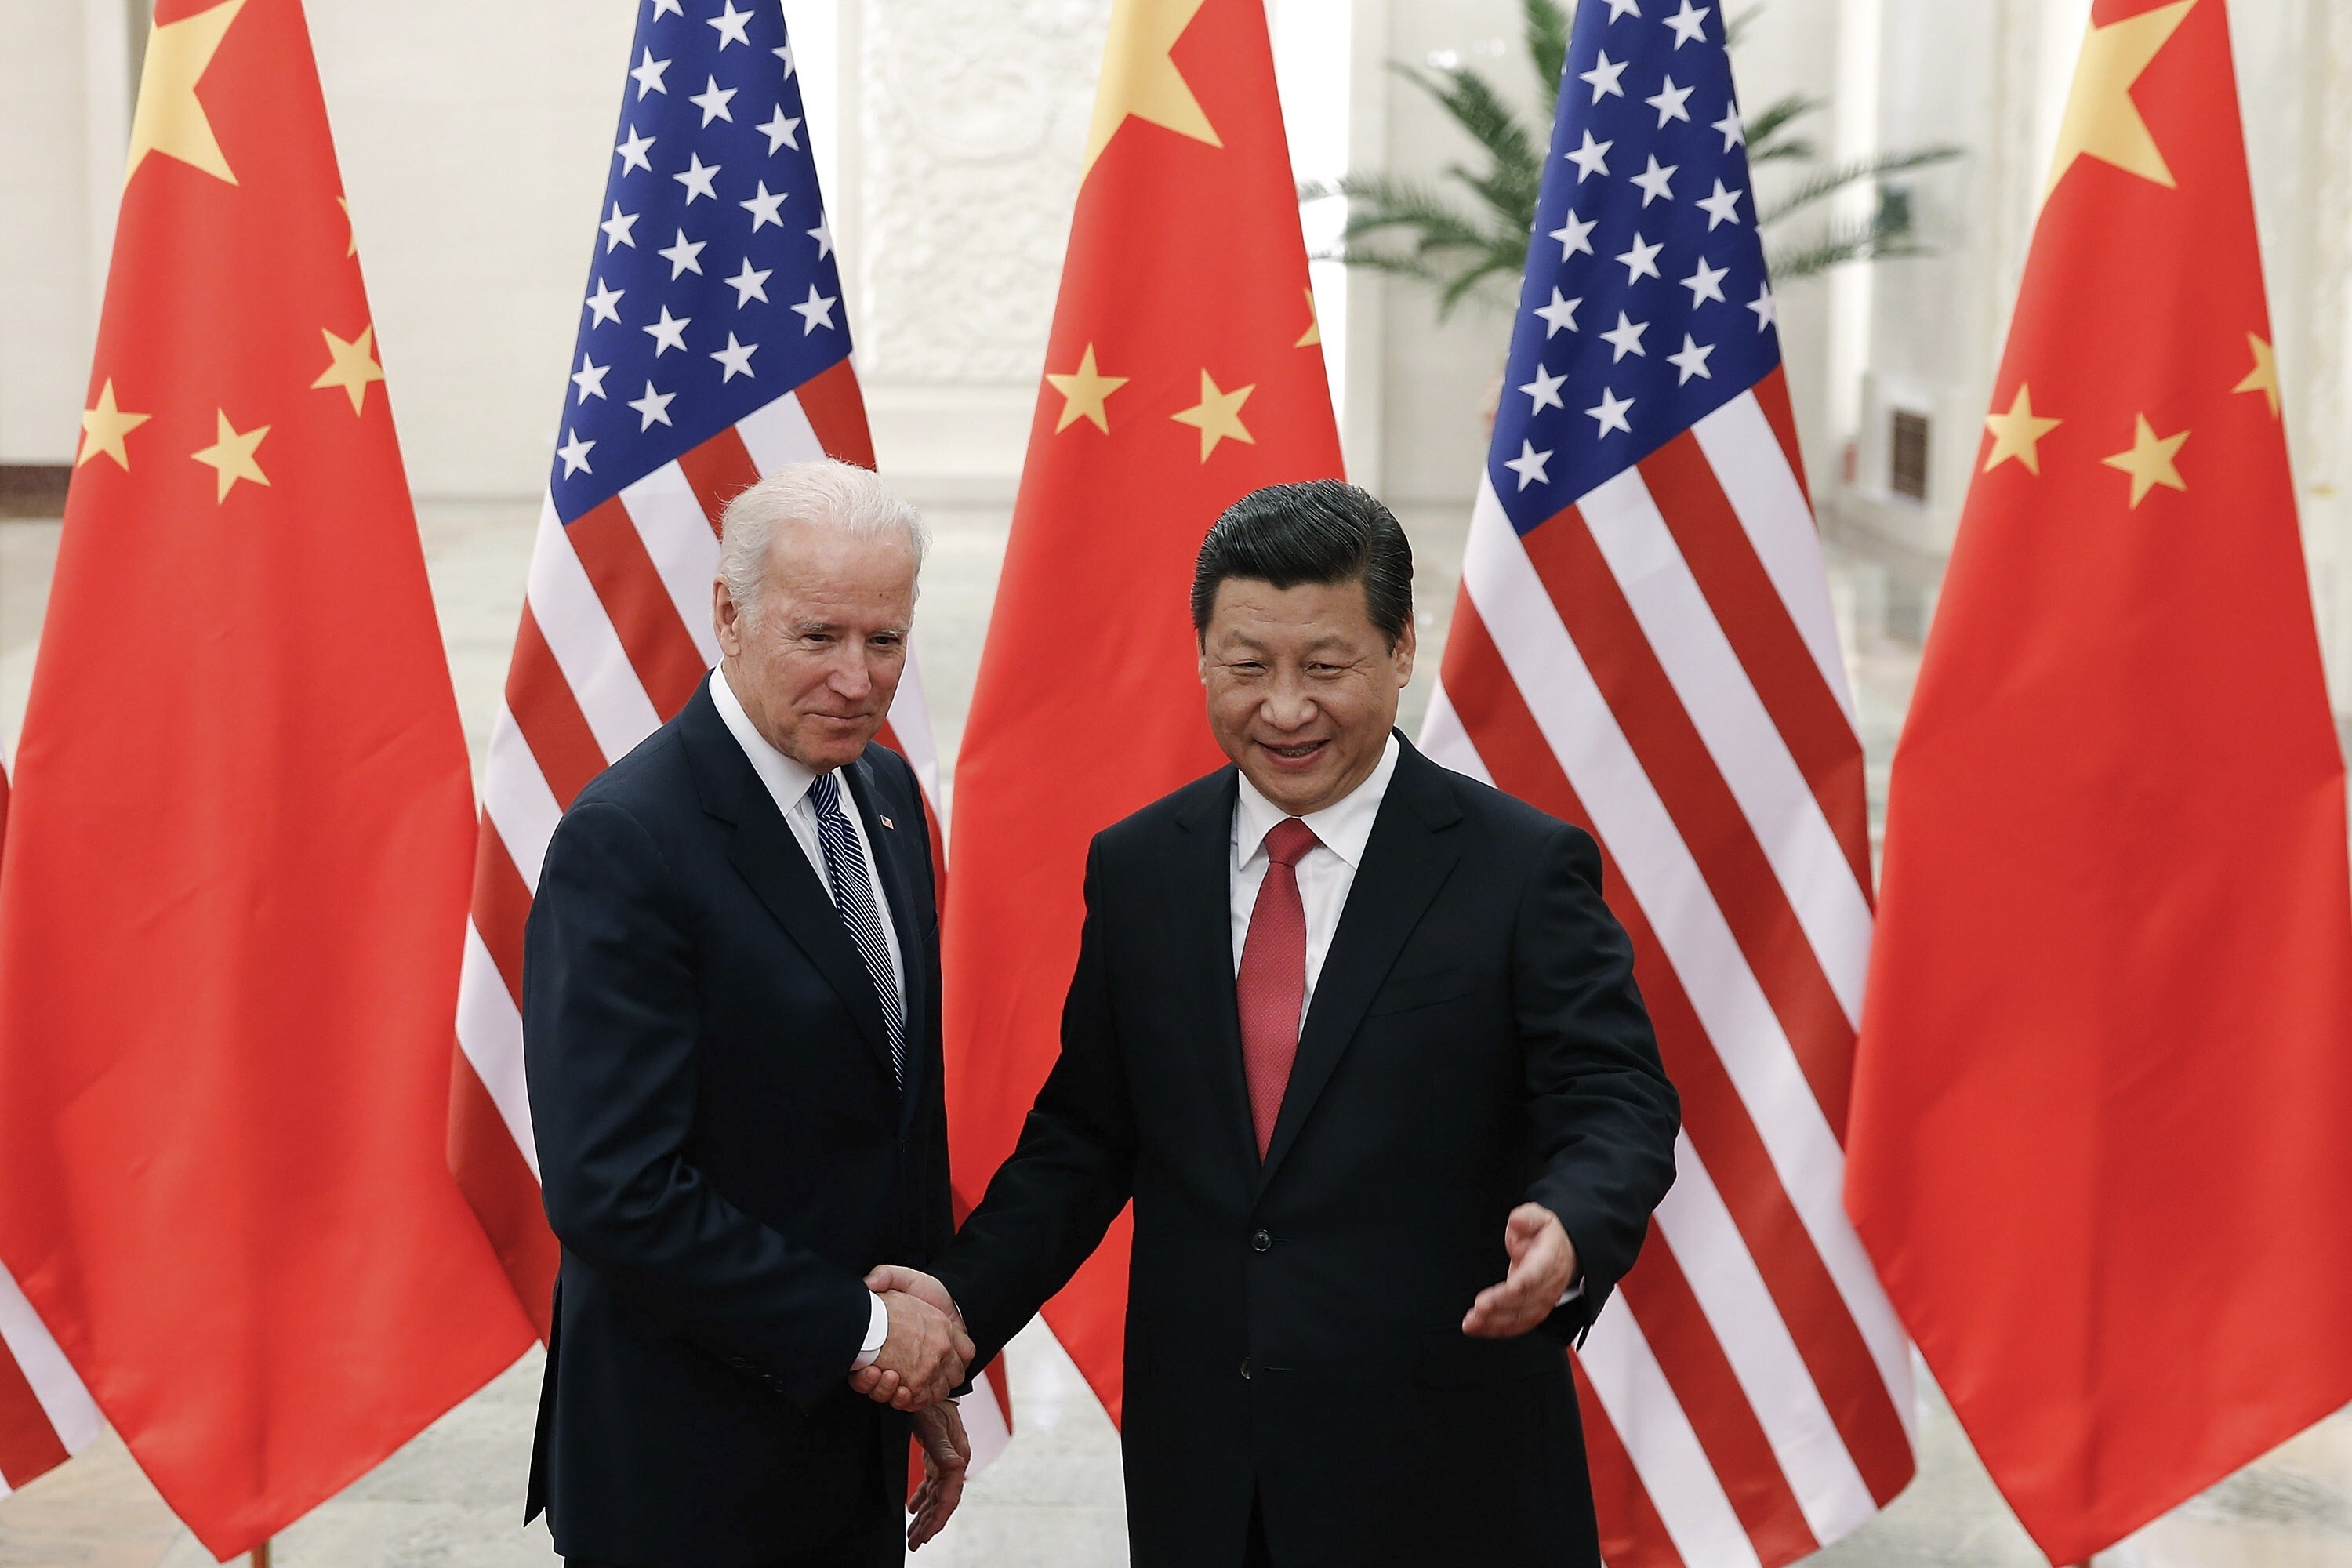 Xi Jinping shakes hands with Joe Biden in 2013. Photo: AP